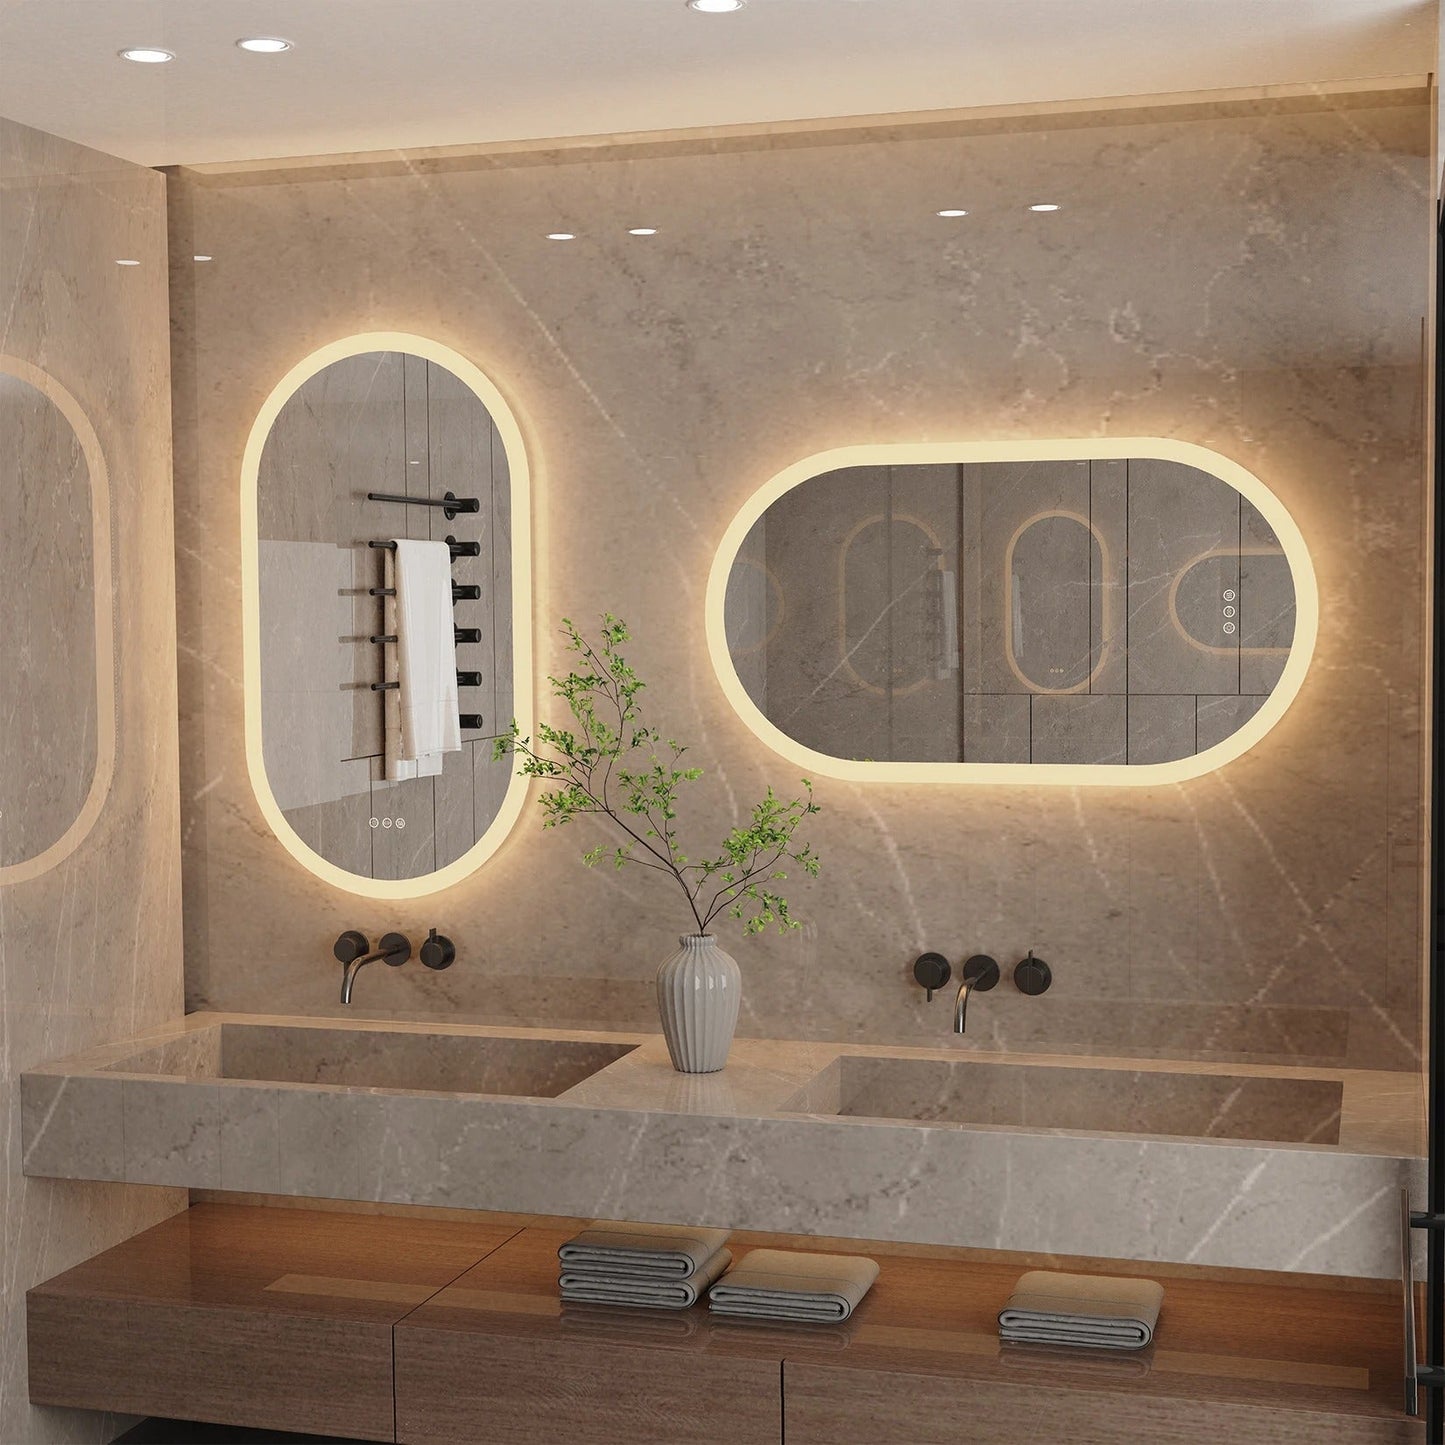 Backlit Light Arched Oval Large LED Makeup Bathroom Smart Mirrors